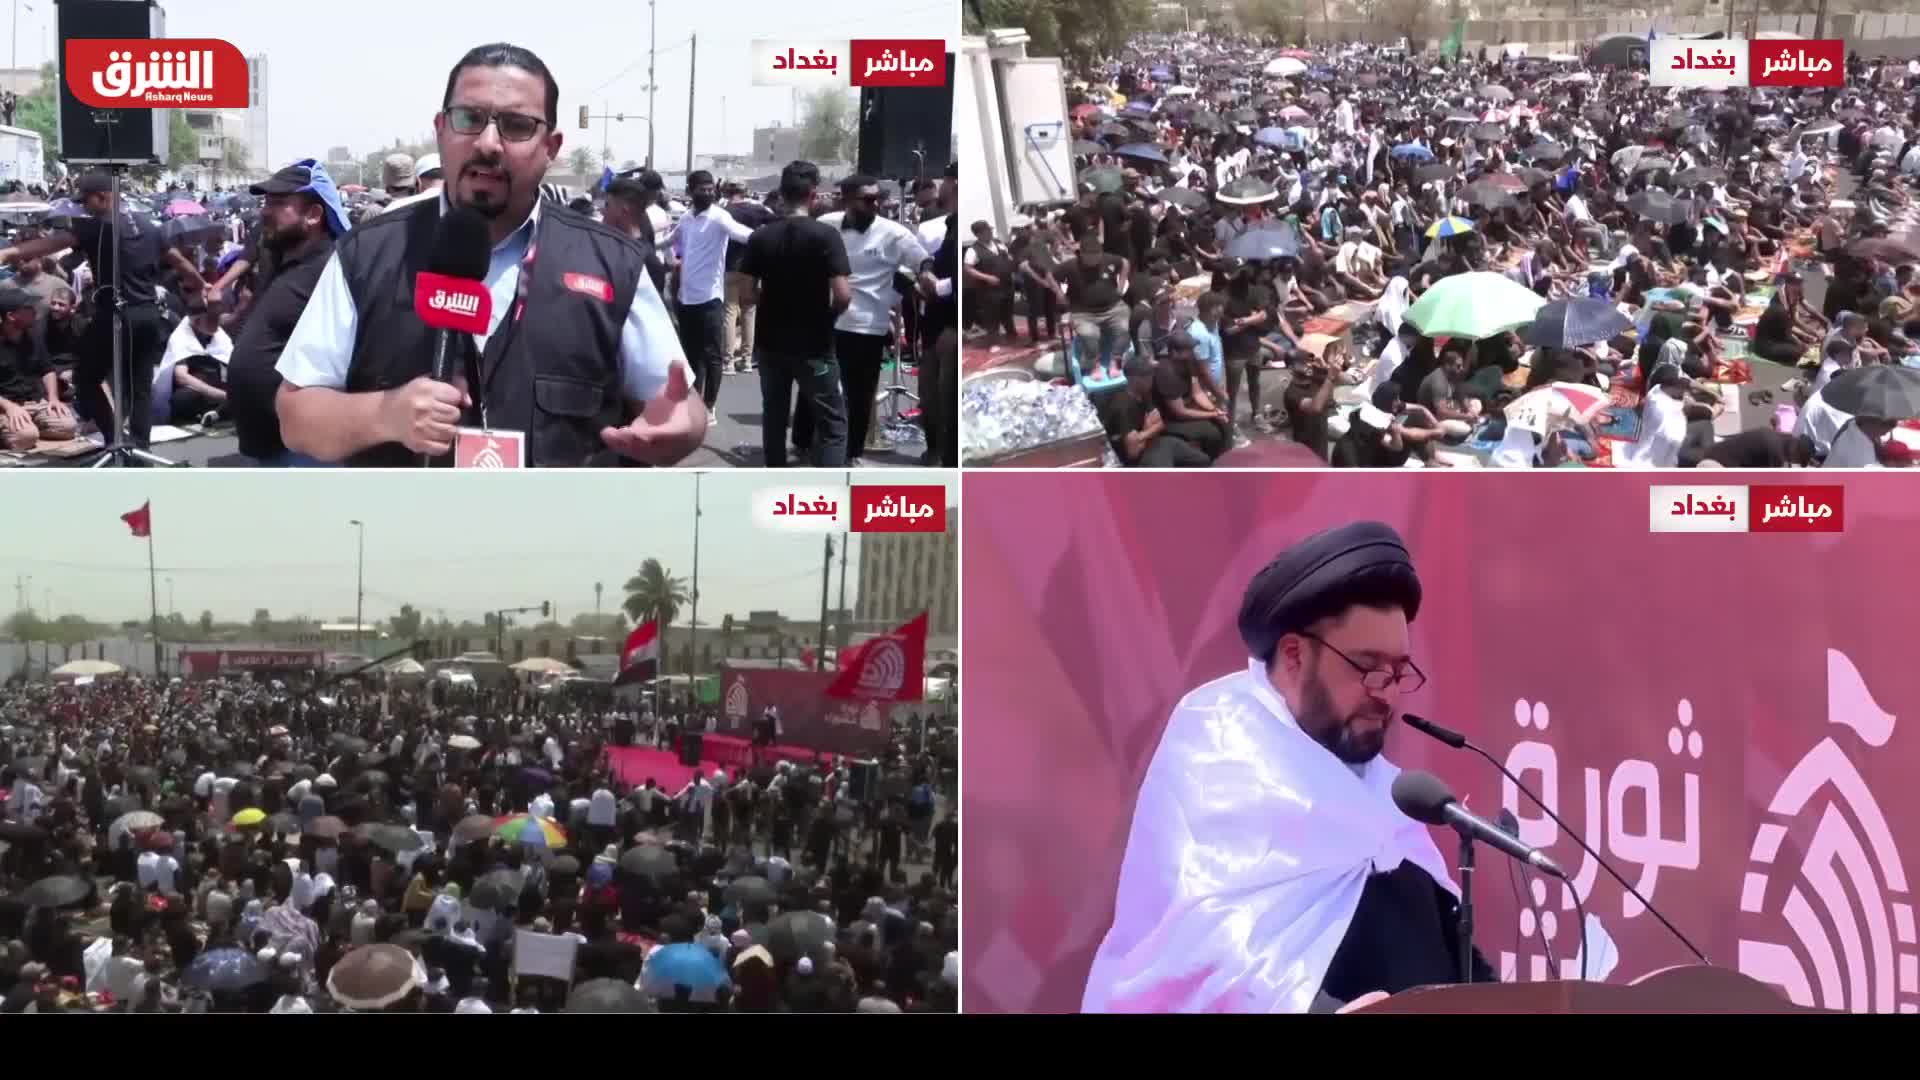 ما هي آخر المستجدات في بغداد بشأن الدعوات للتظاهرات من قبل التيار الصدري والإطار التنسيقي؟